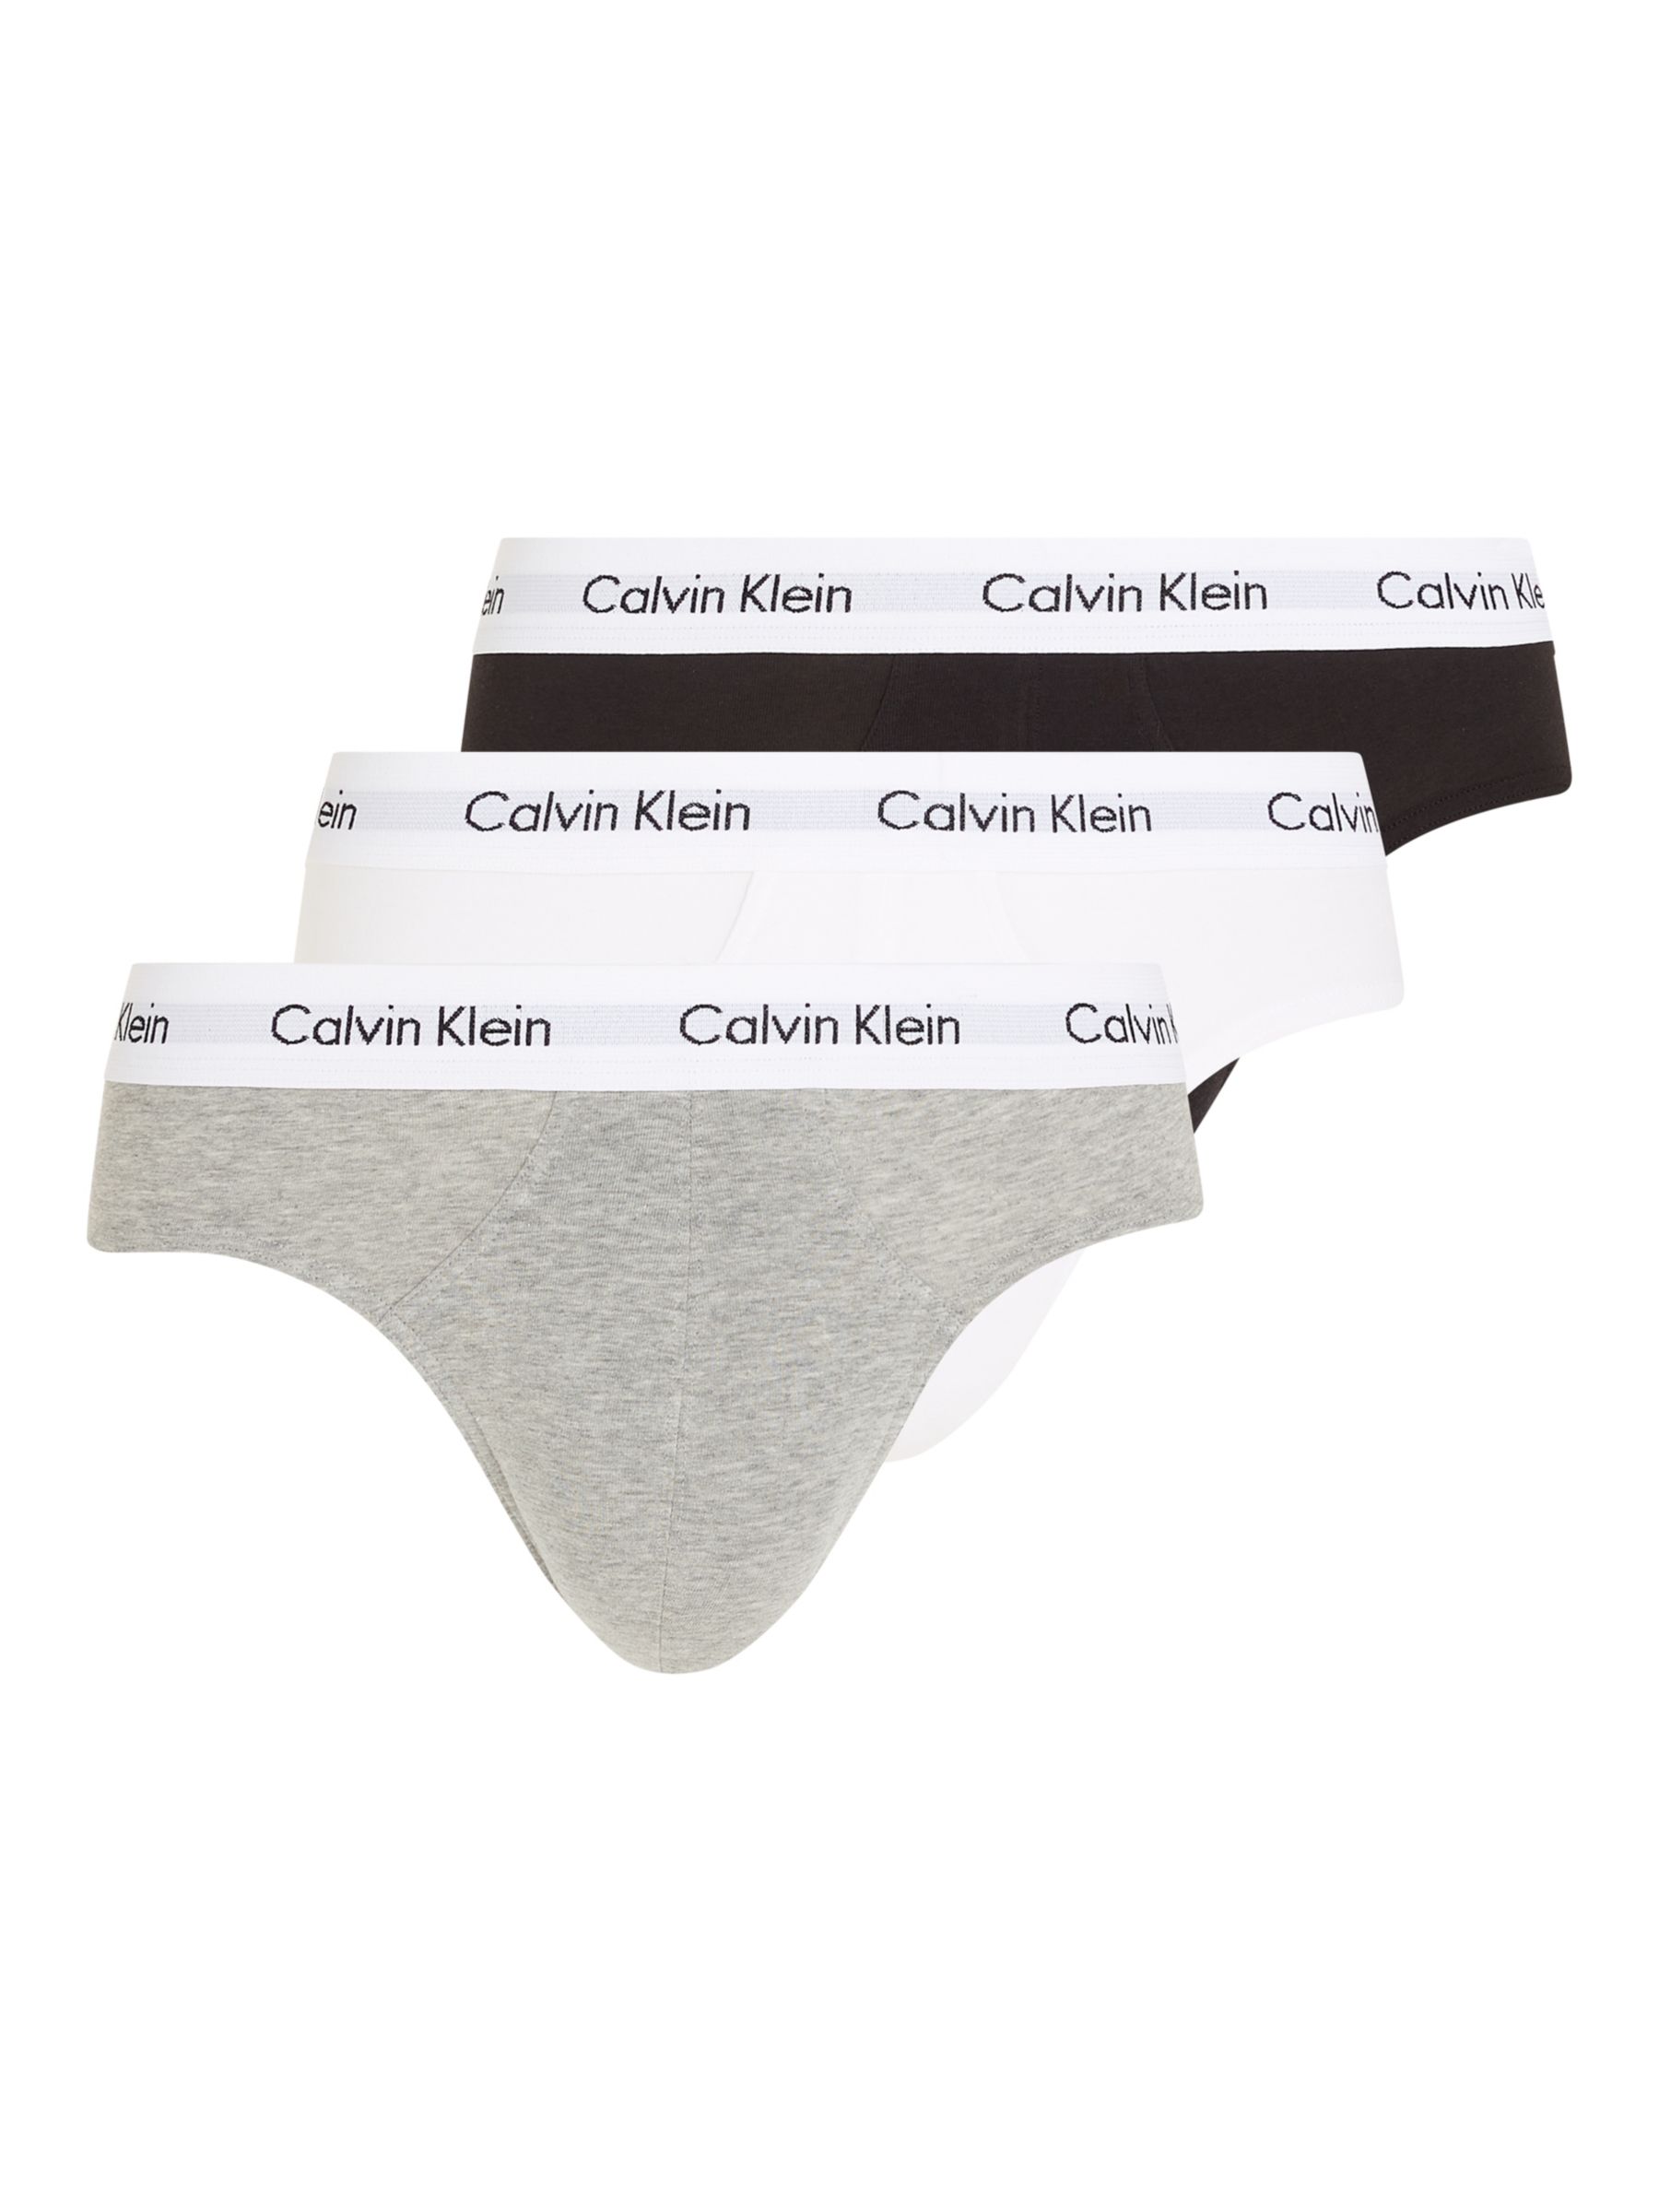 Calvin Klein Underwear, Intimates & Sleepwear, Calvin Klein 3 Pack Womens  Underwear Size Small